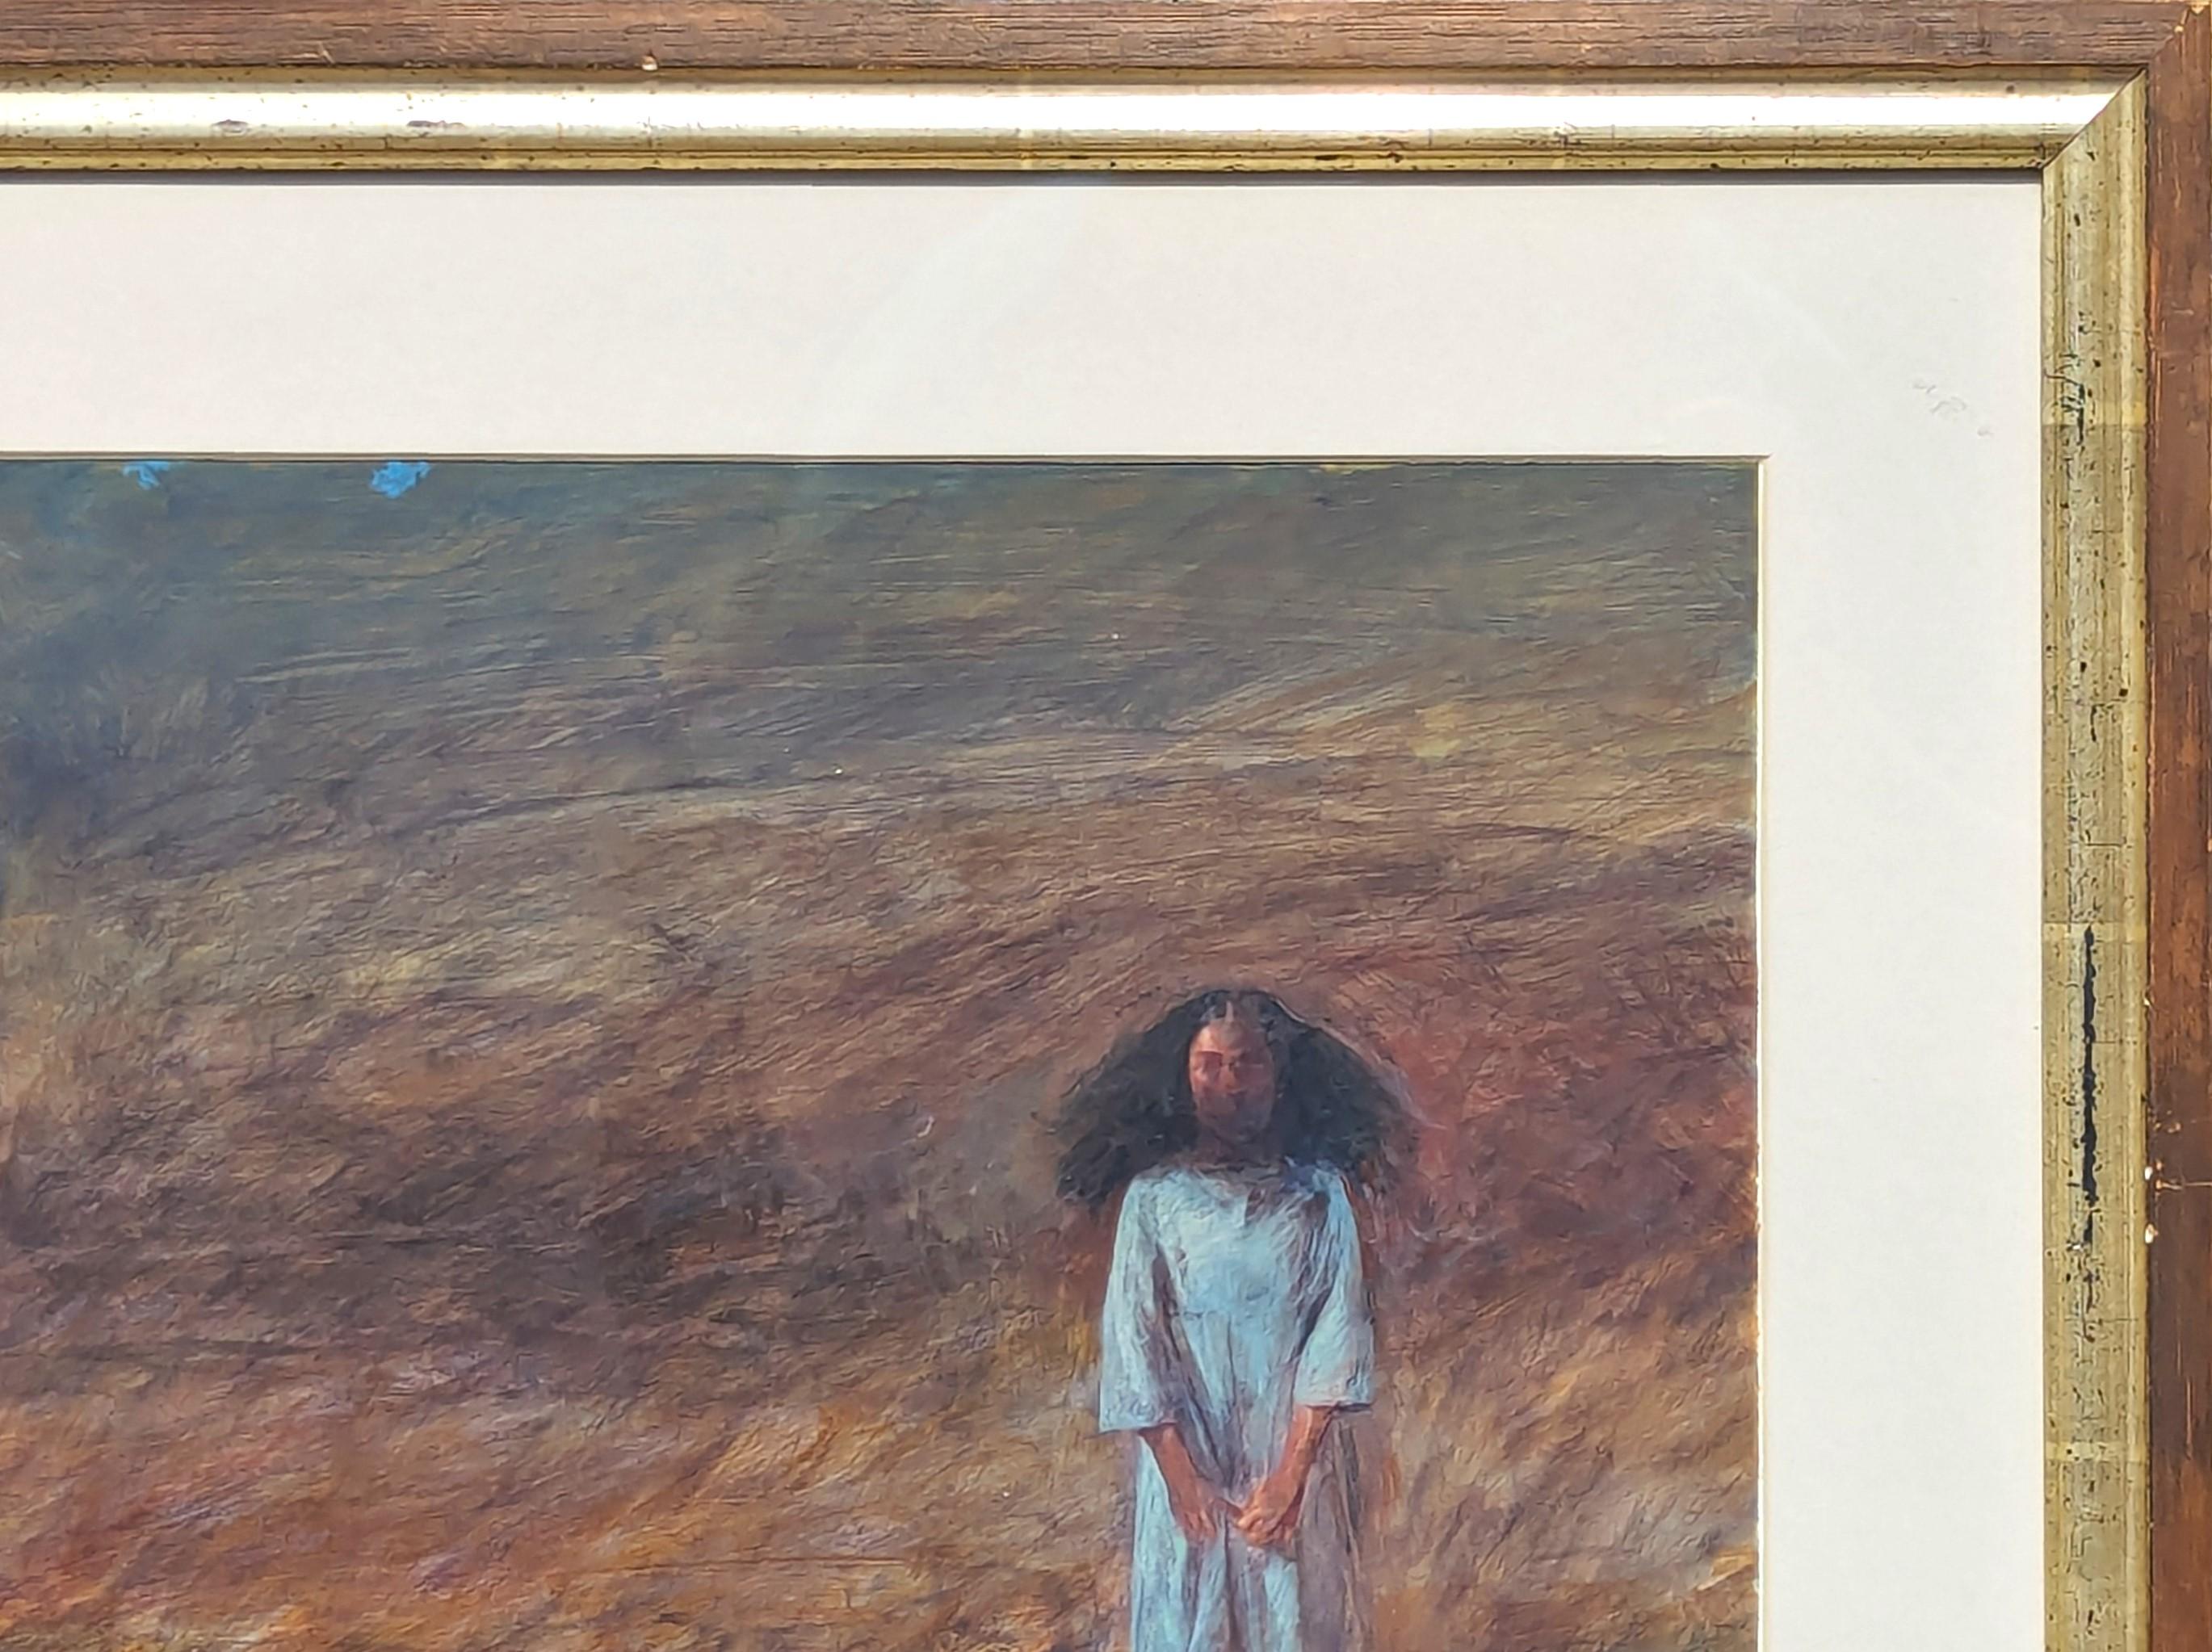 Peinture de paysage pastoral naturaliste en techniques mixtes de l'artiste Kermit Oliver, basé au Texas. L'œuvre représente une jeune fille debout dans un champ avec une vache à l'arrière-plan. Signé dans le coin inférieur gauche du recto.